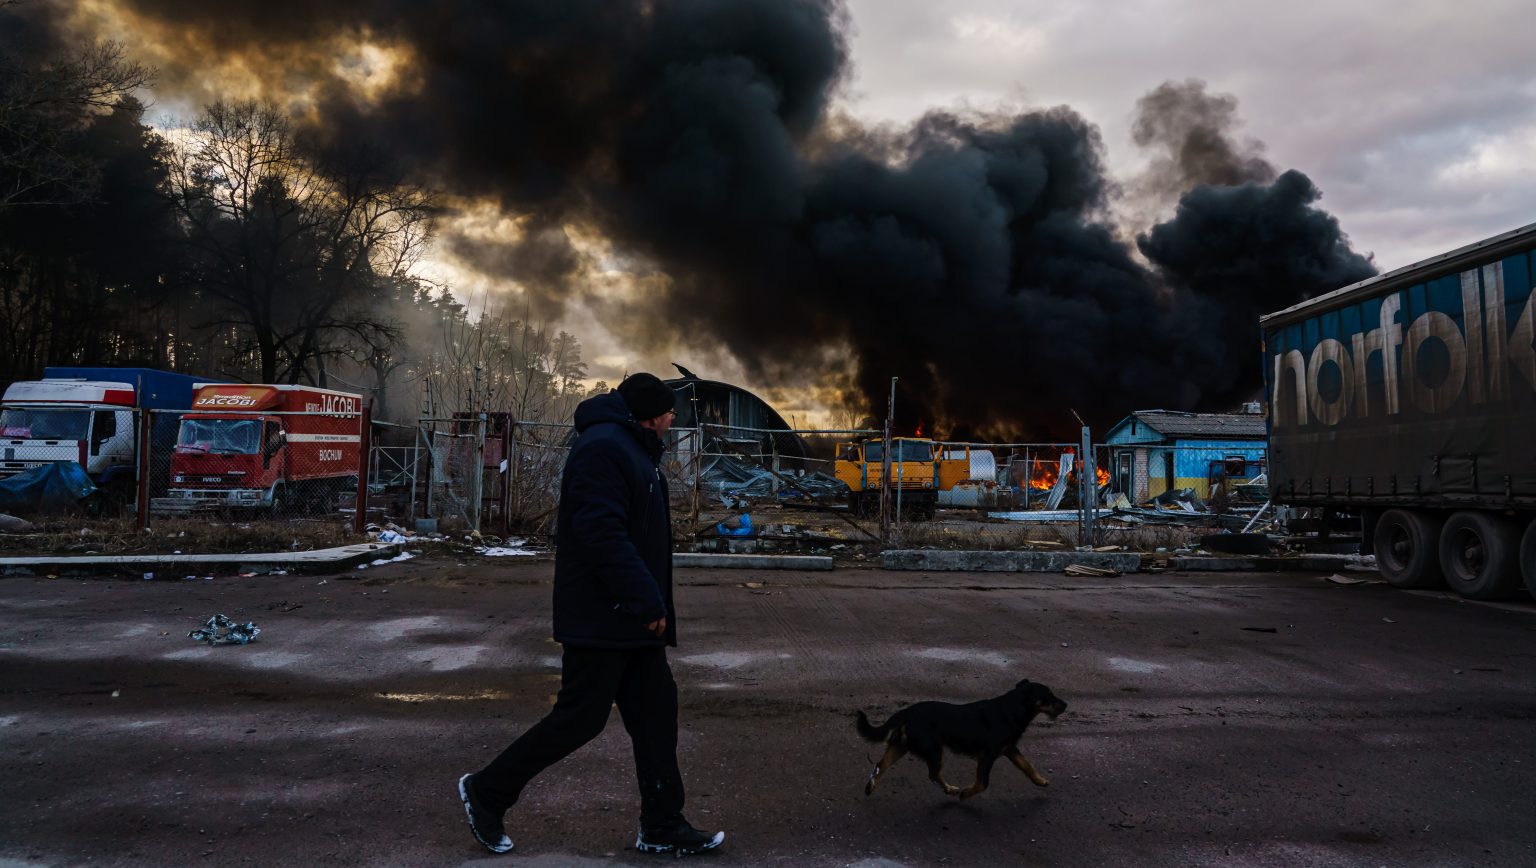 Négyen meghaltak a délkelet-ukrajnai Bombázásban az ukrán hatóságok szerint